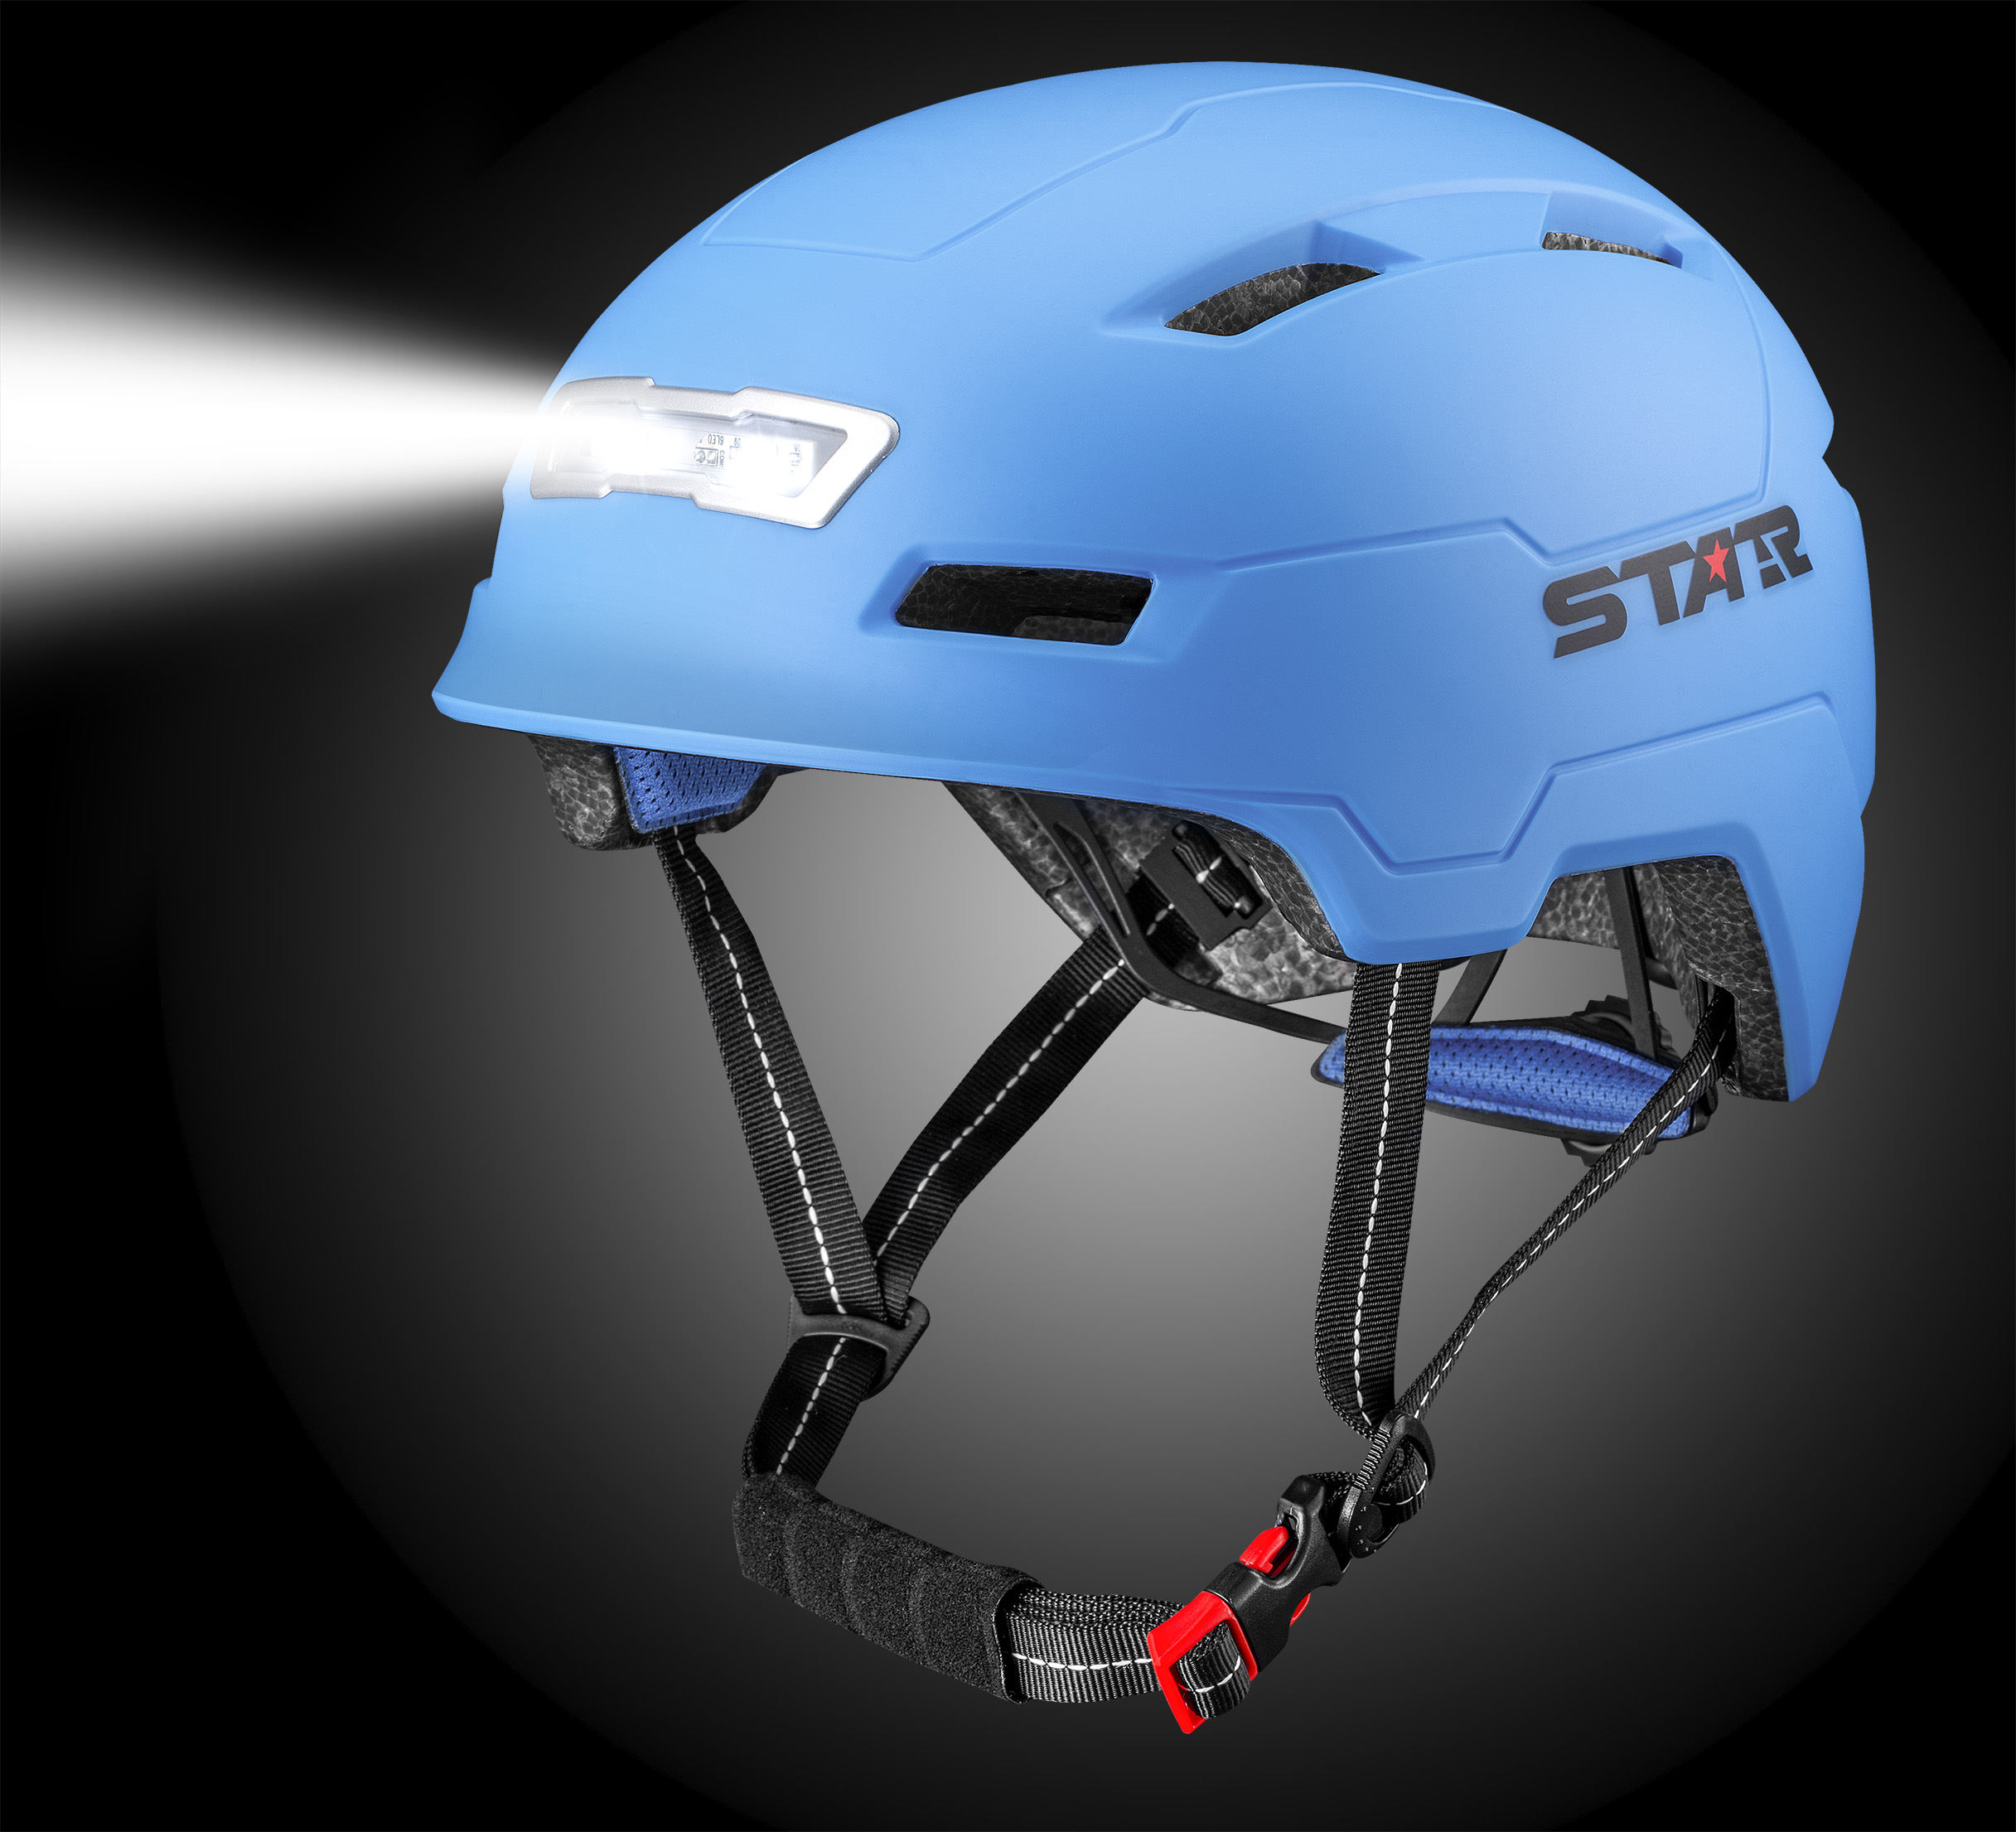 E3-10L E-Bike Helmet with LED lights